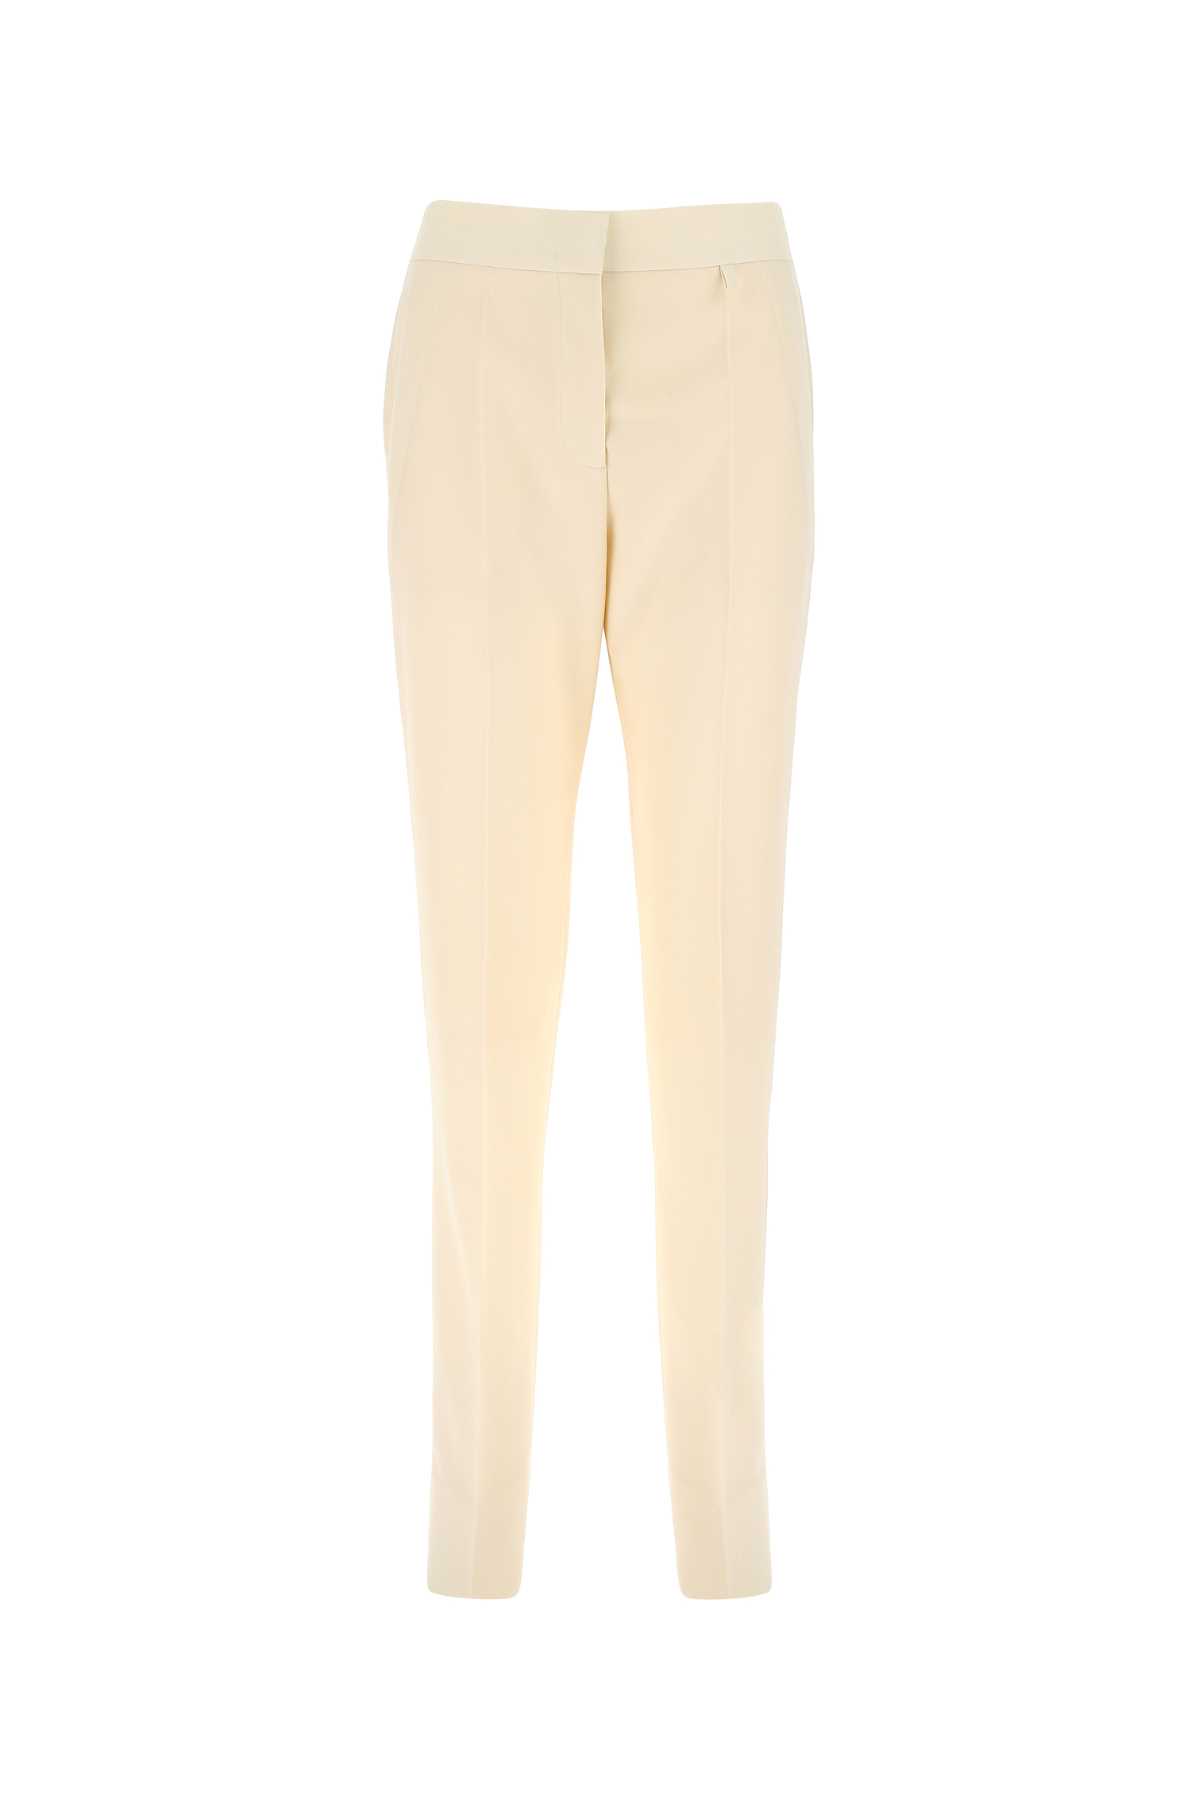 Pantalons Pour Femme - Givenchy - En Wool Multicolor - Taille:  -